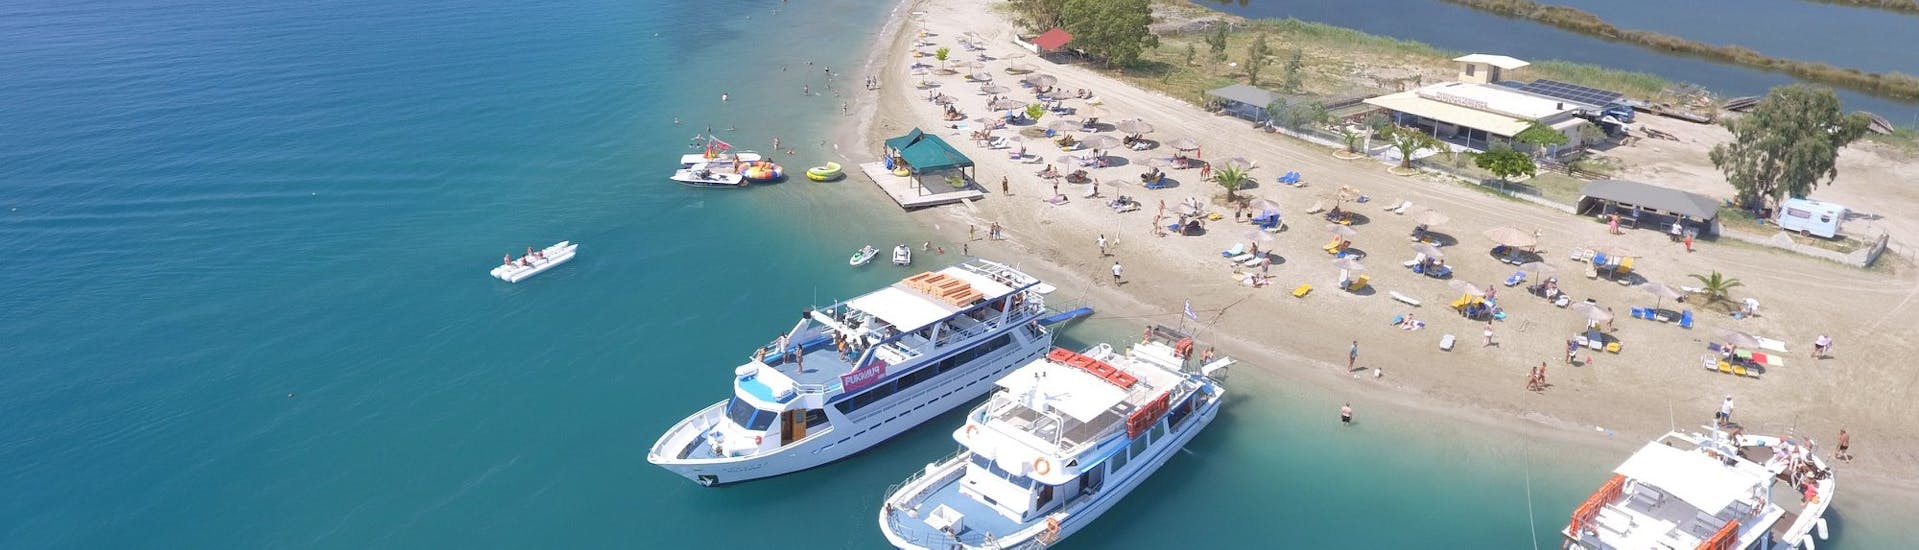 Gita in barca da Corfù (città) a Vido island con bagno in mare e visita turistica.